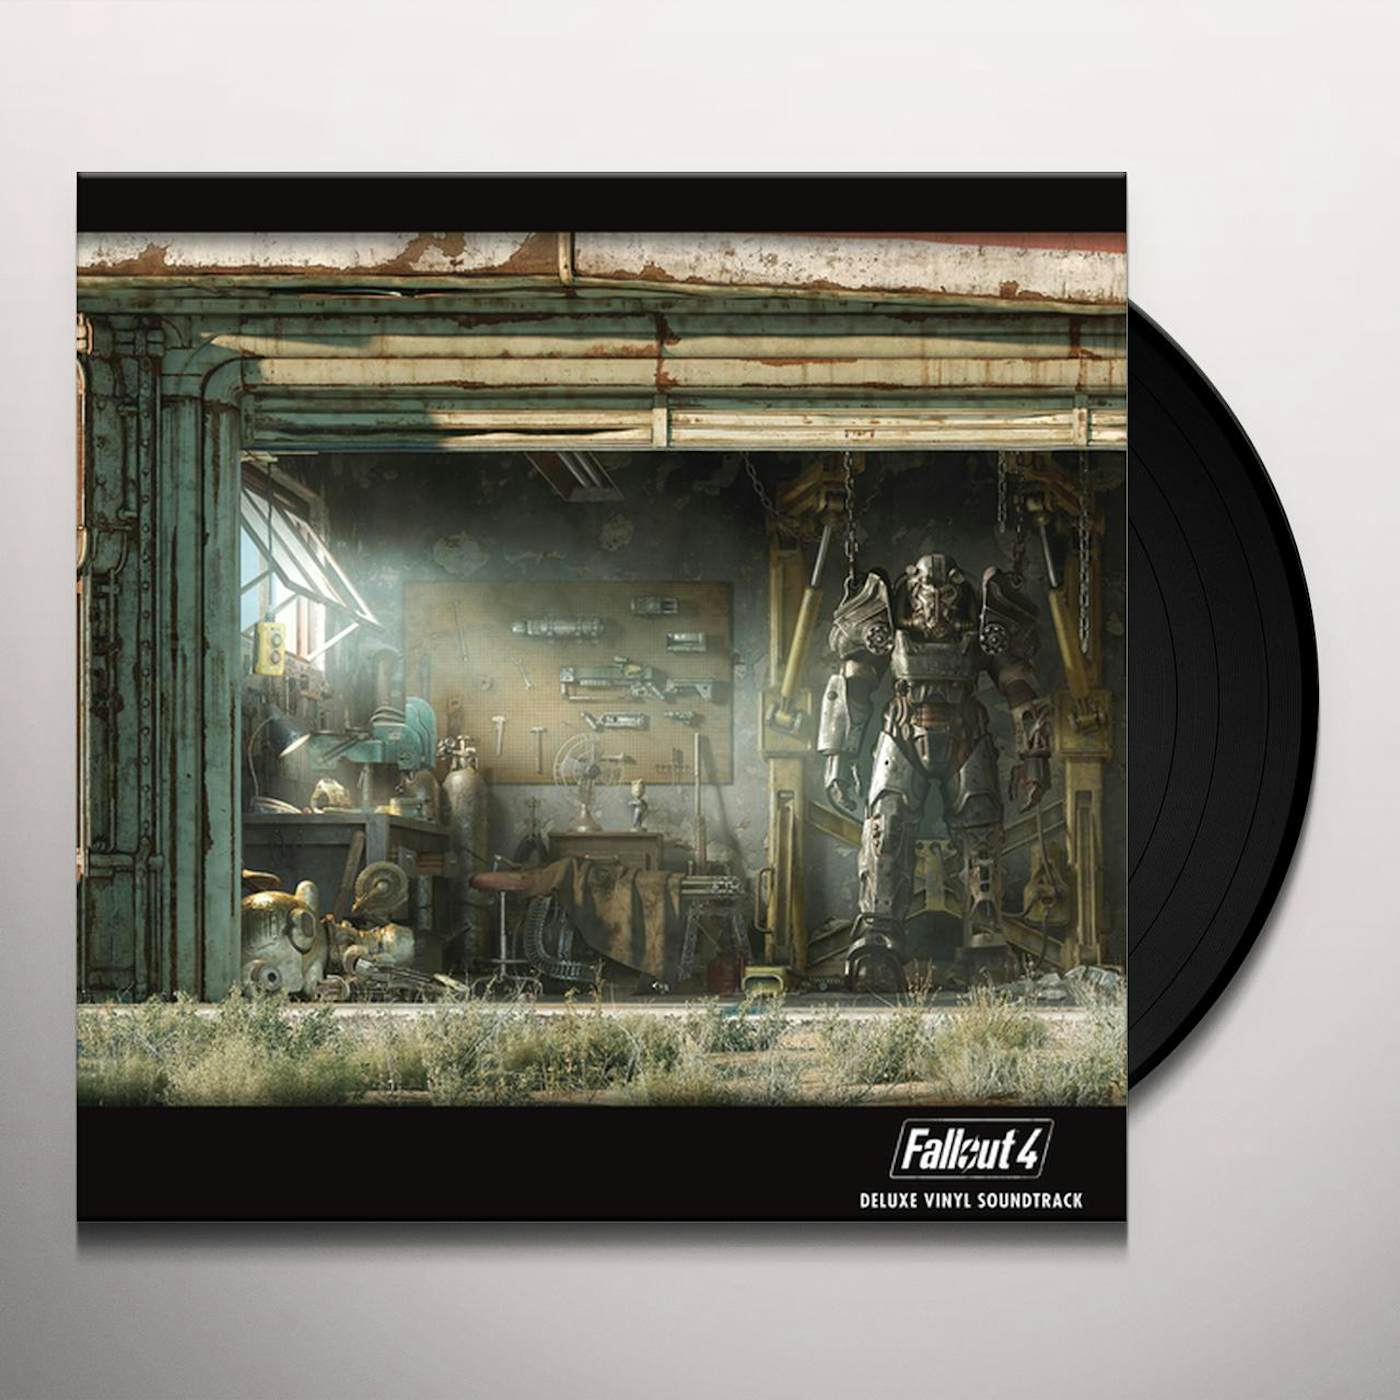 Fallout 76 (Original Soundtrack) - Inon zur (2xLP Vinyl Record)